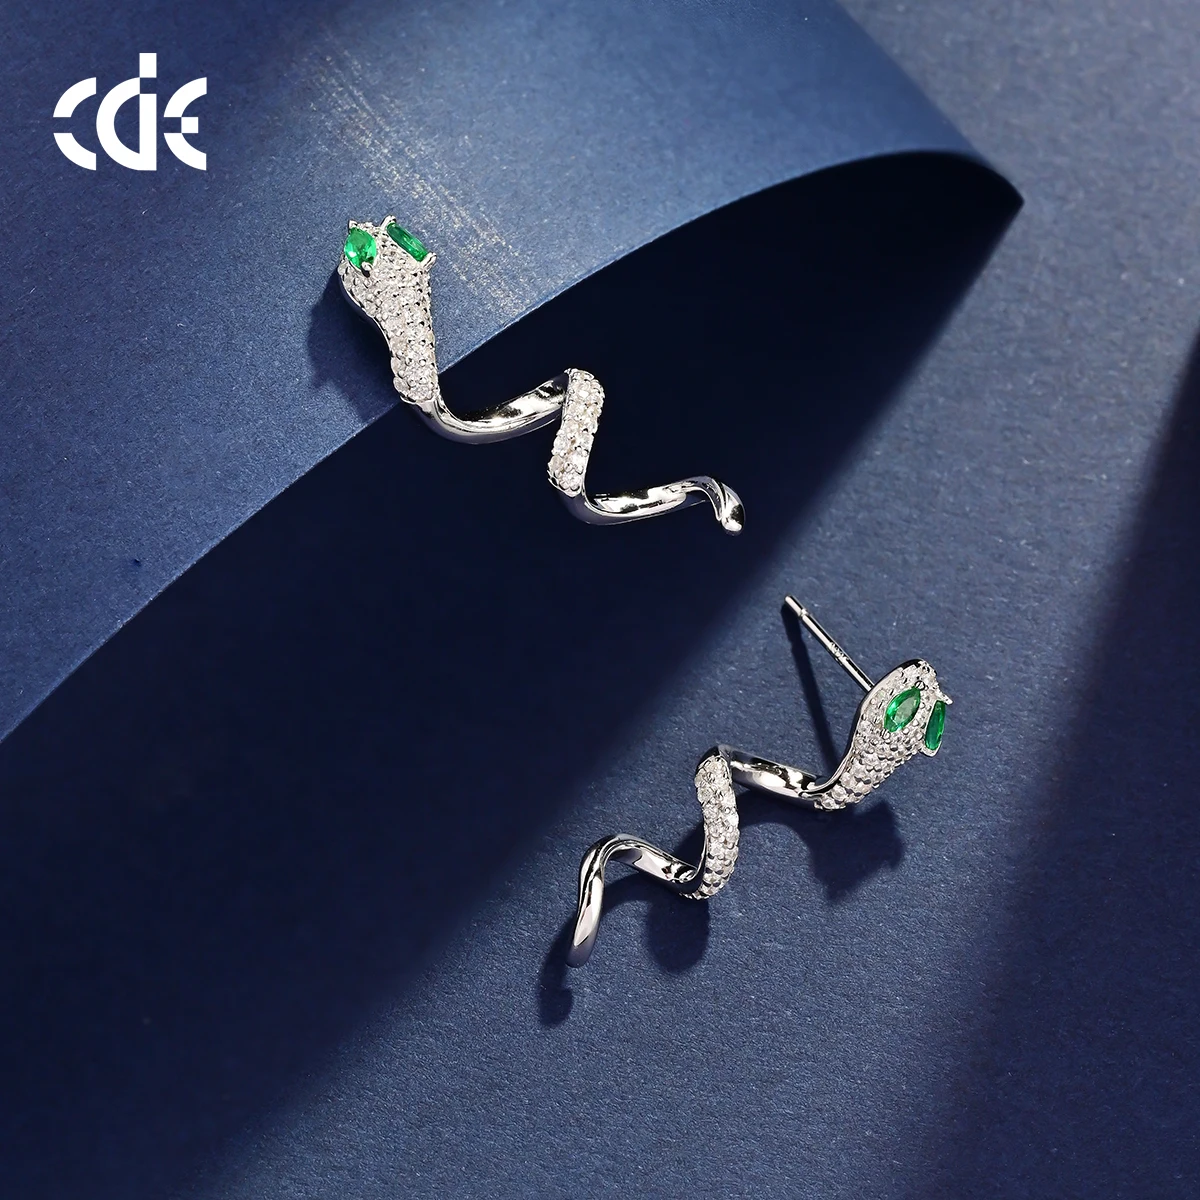 CDE CZYE013 Fine S925 Silver Jewelry Earring Rhodium Plated Animal Earrings Wholesale Bulk Zircon Snake Stud Earrings